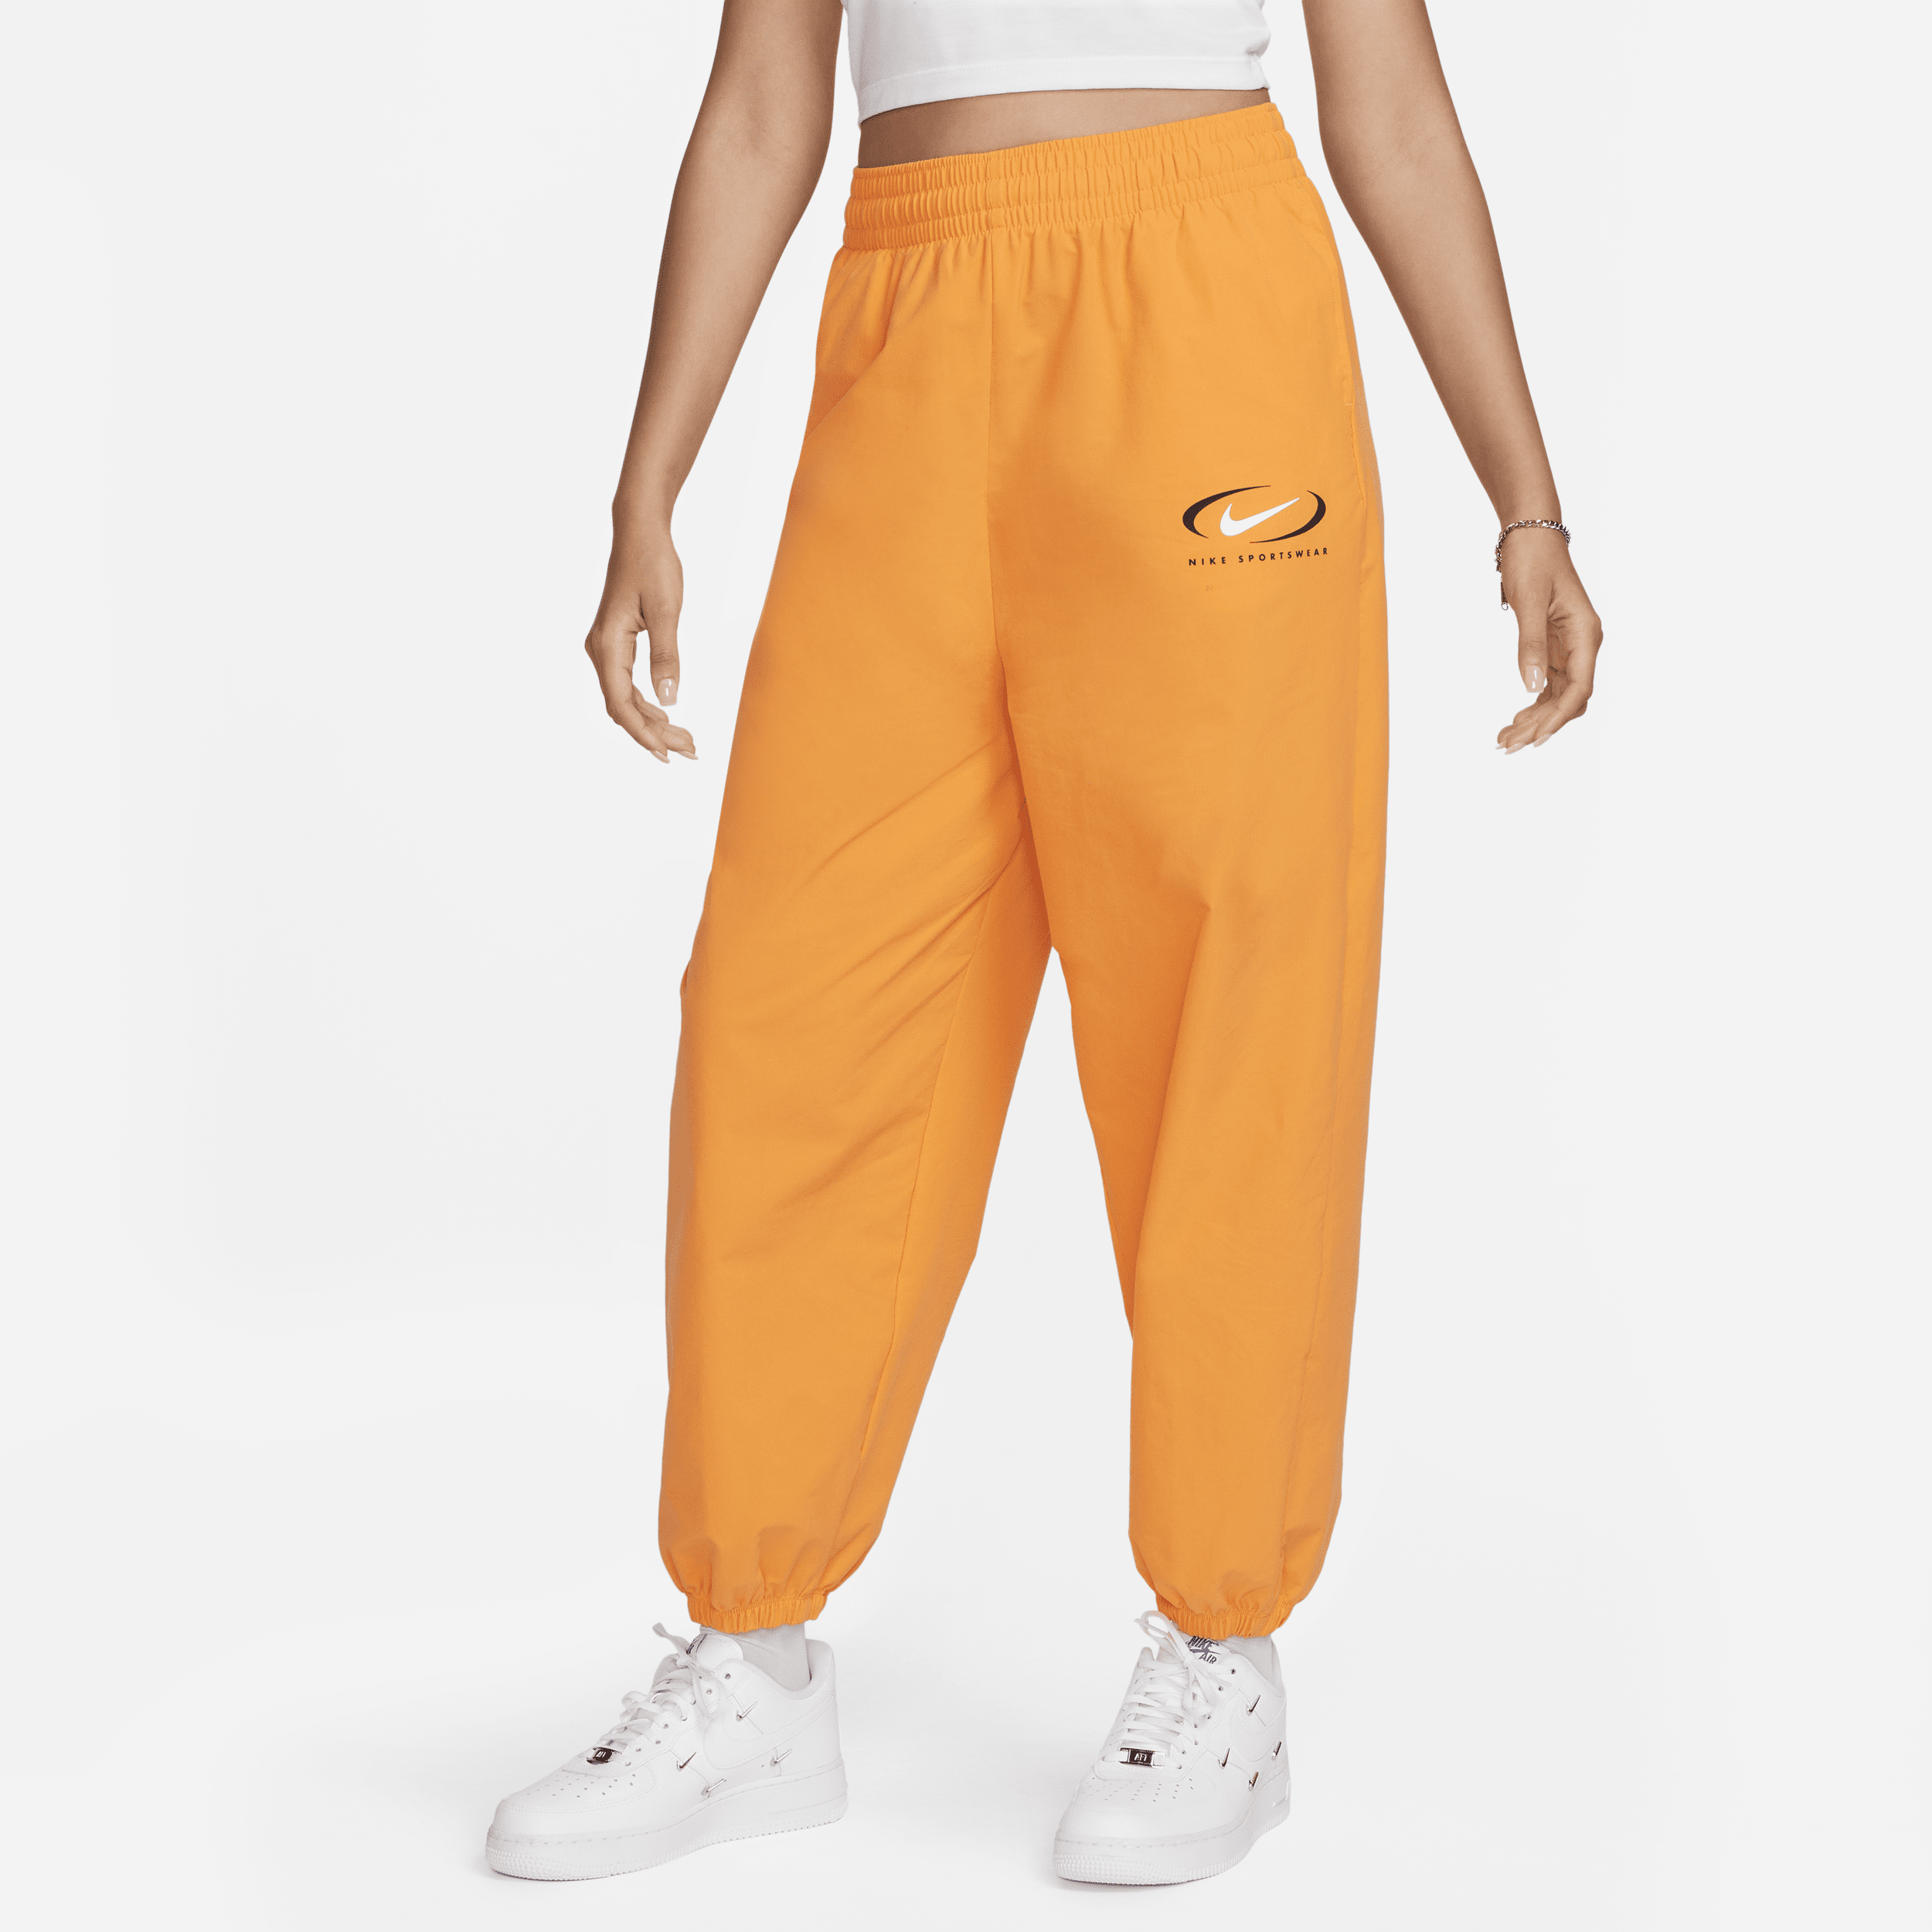 Vævede Nike Sportswear-joggers til kvinder - Orange